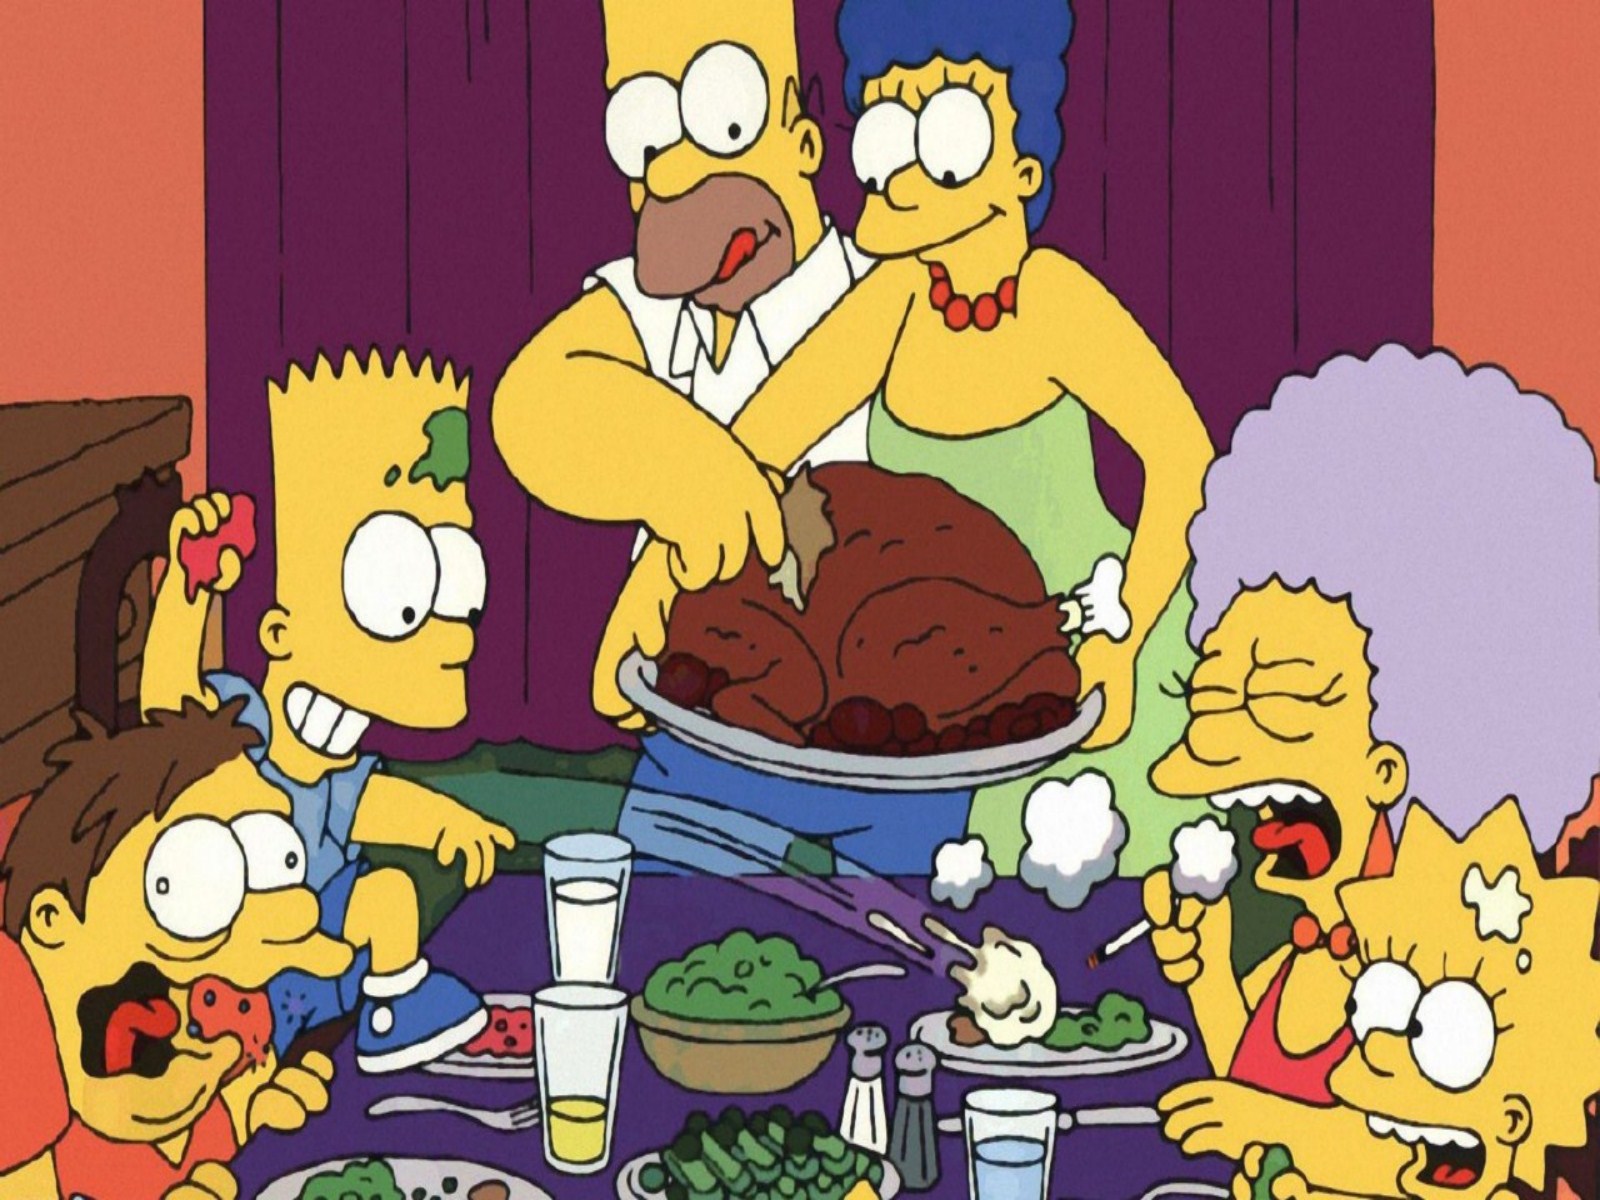 Funny Thanksgiving Wallpaper